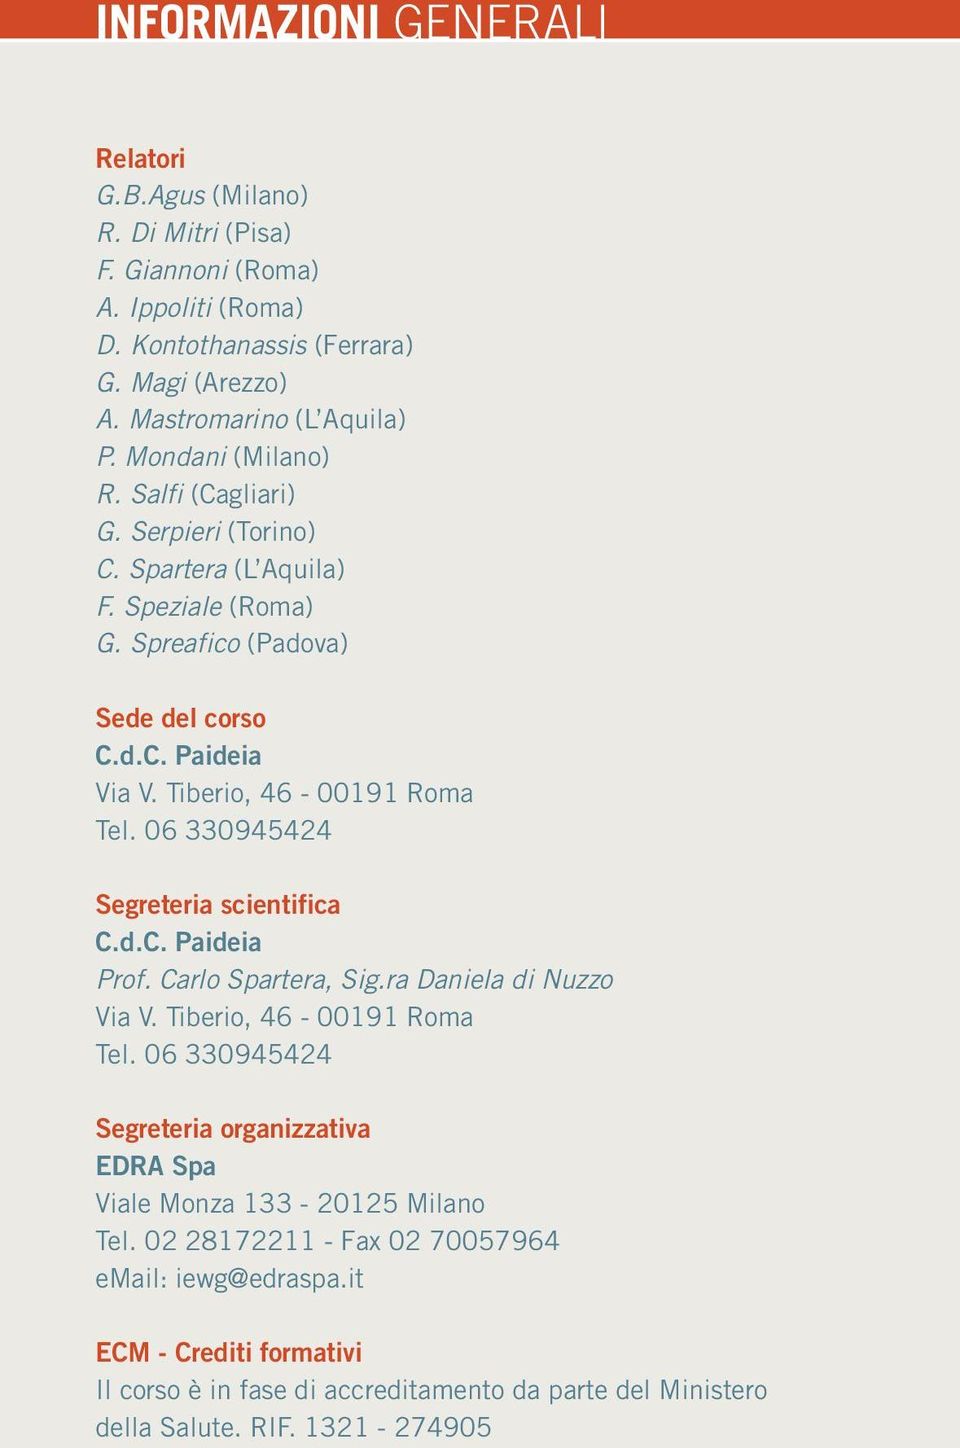 06 330945424 Segreteria scientifica C.d.C. Paideia Prof. Carlo Spartera, Sig.ra Daniela di Nuzzo Via V. Tiberio, 46-00191 Roma Tel.